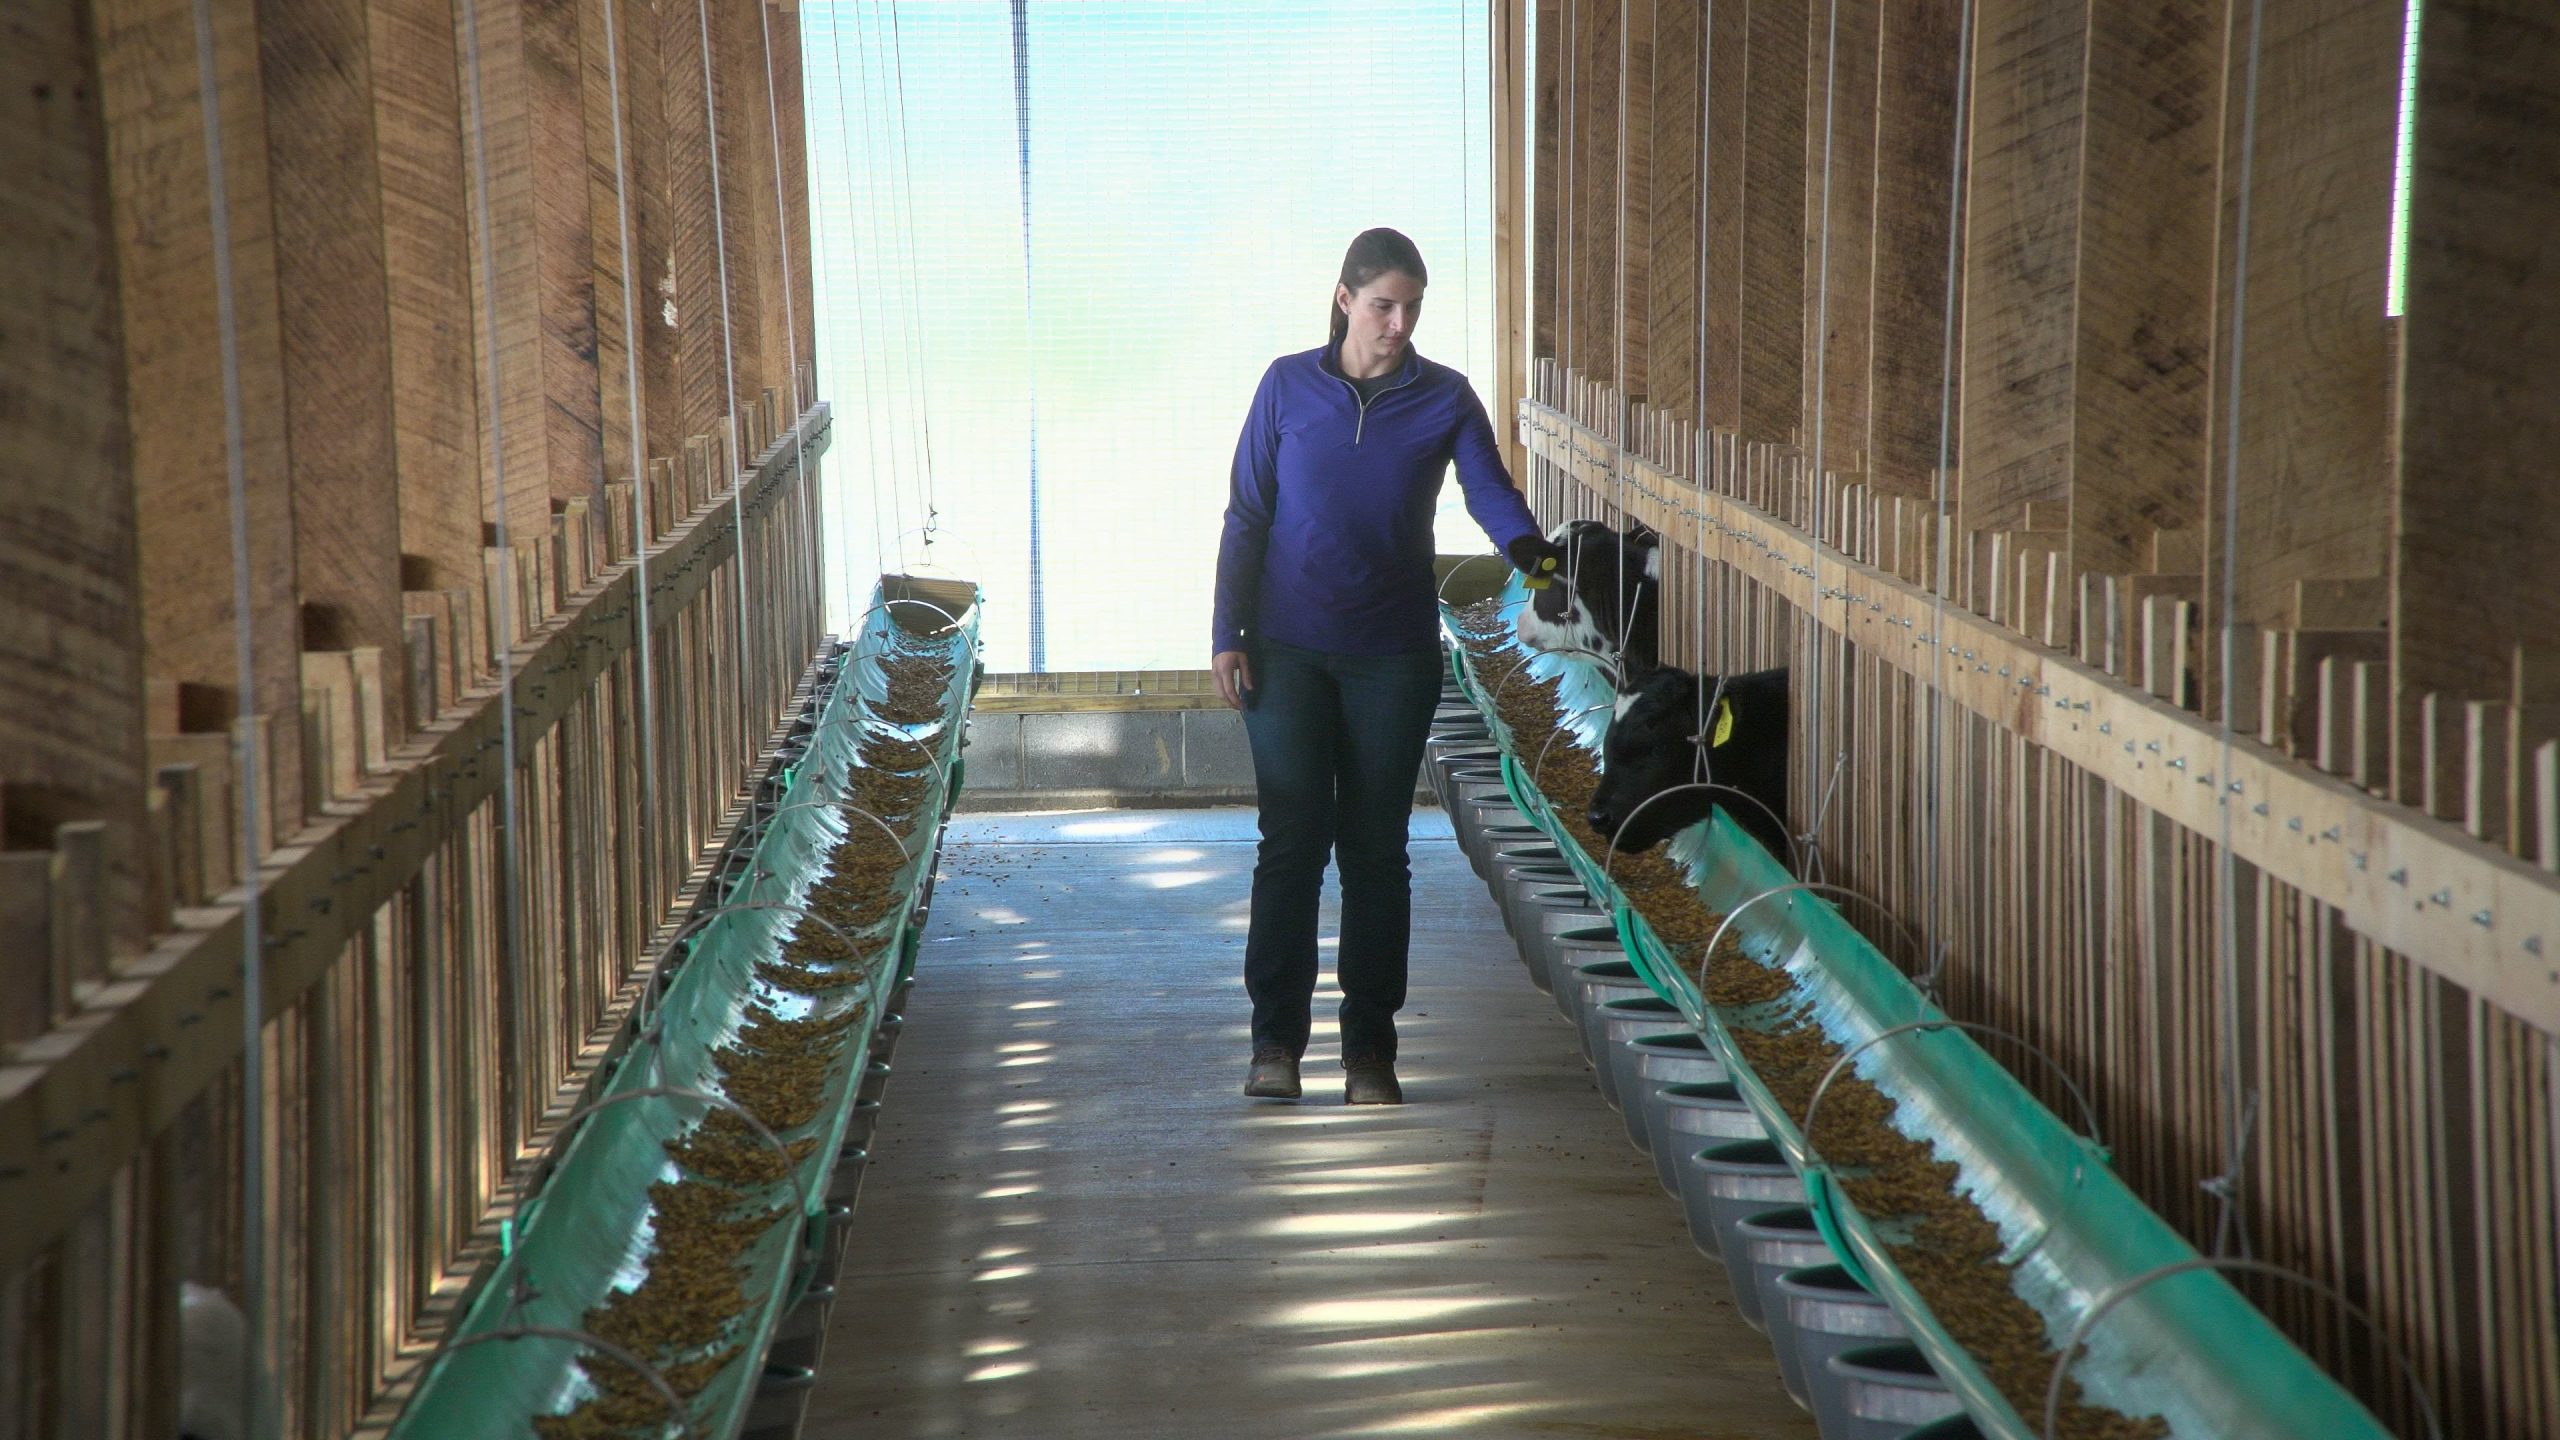 Dr. Sonia Arnold walks through a veal barn checking calves.